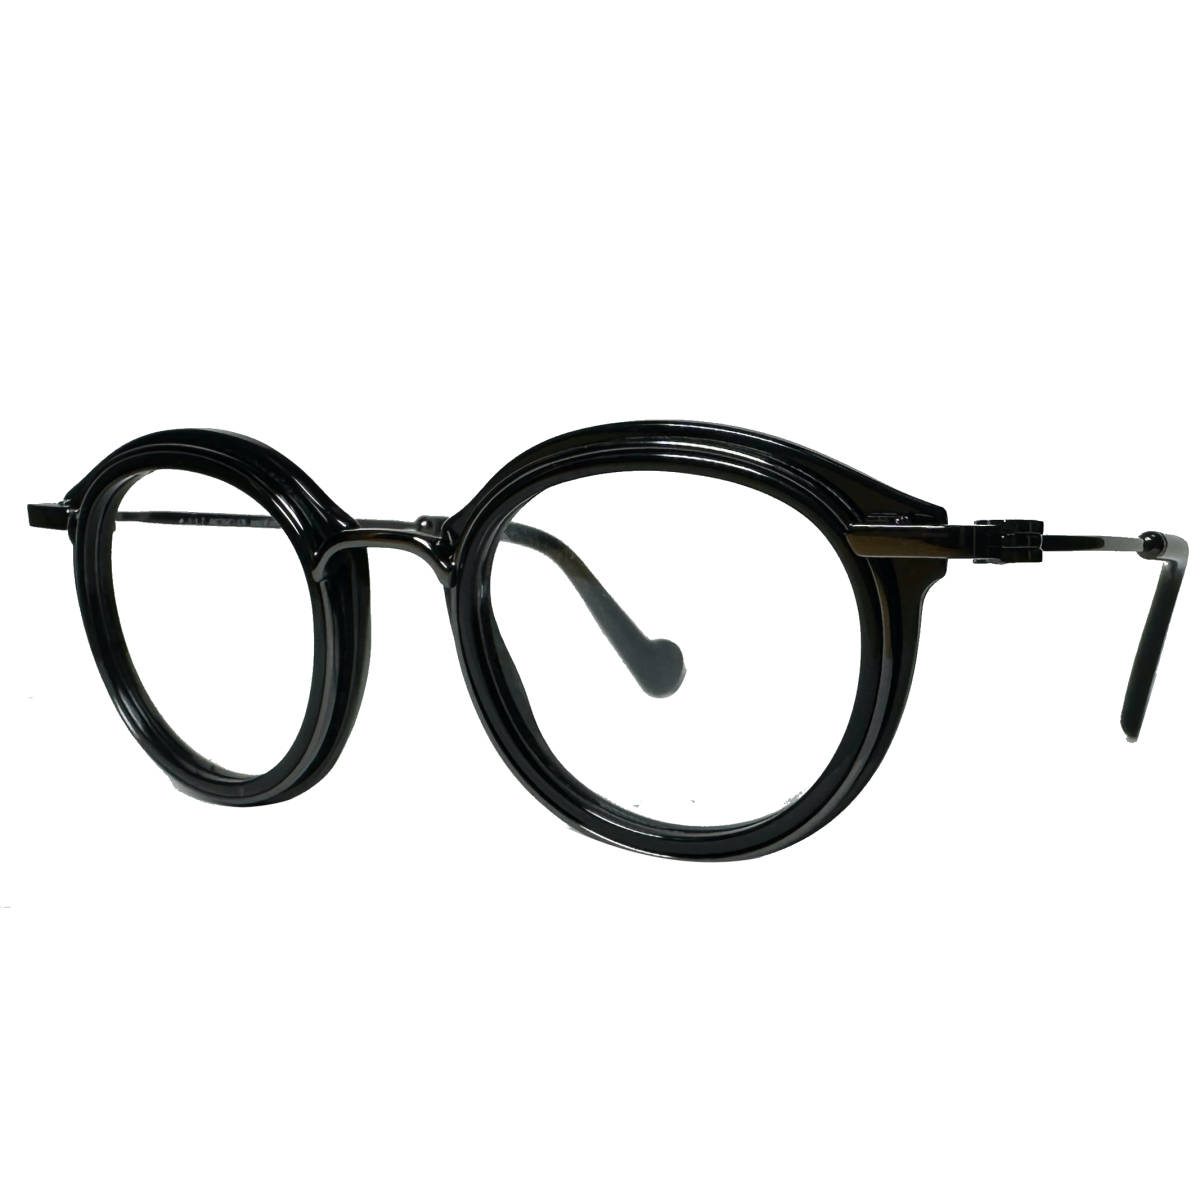 処分価格 Moncler メガネ 正規新品 モンクレール 付属品付き ML5007 /V 001 イタリア製_画像4